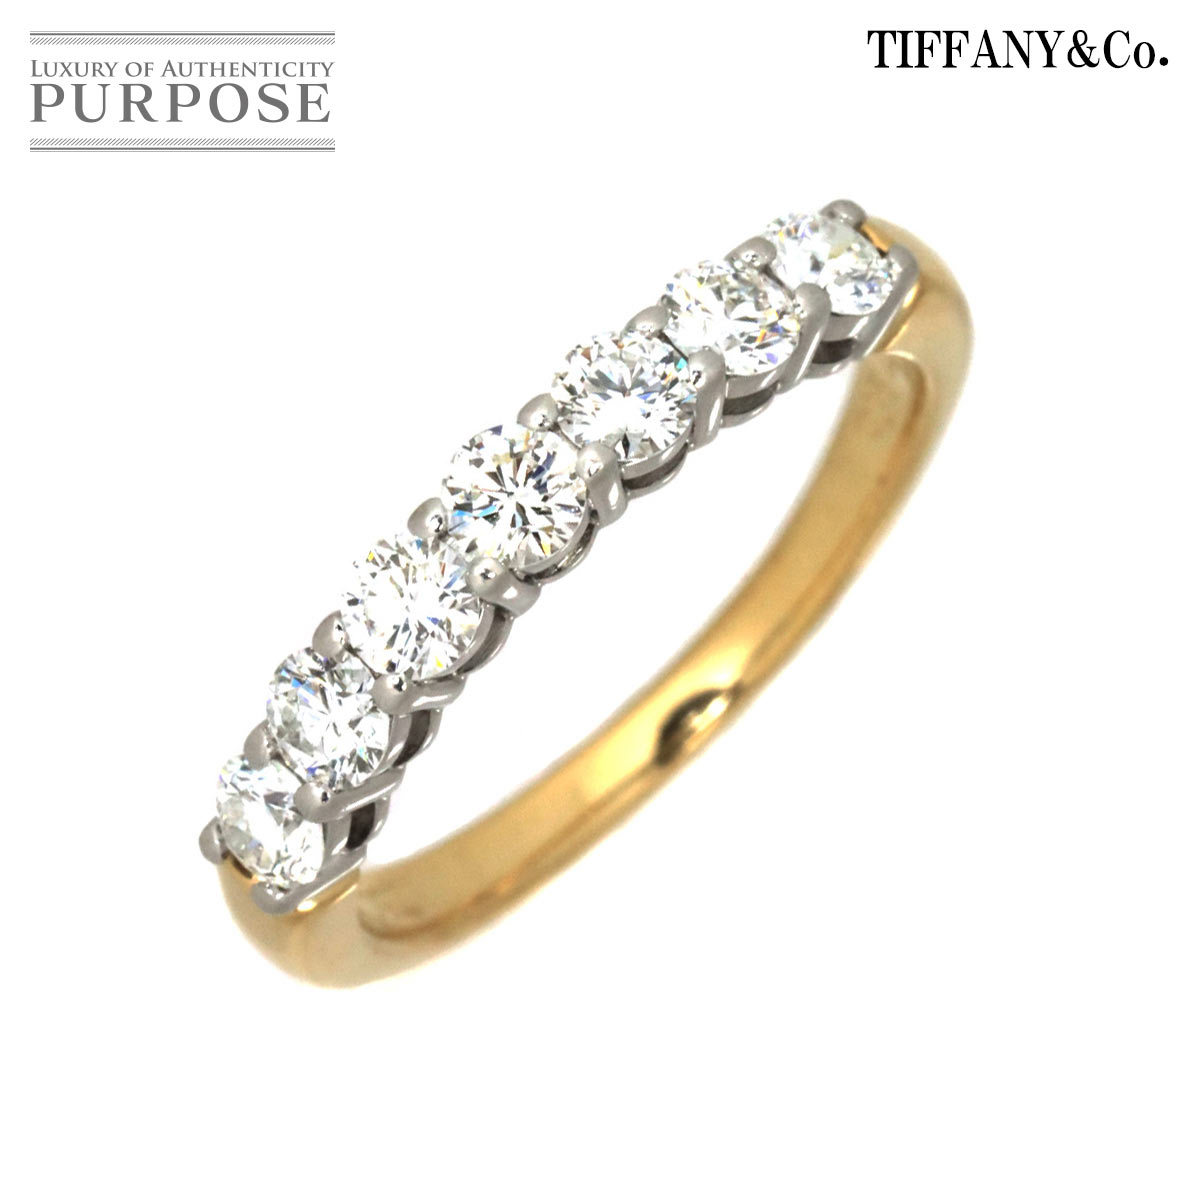 ティファニー TIFFANY&Co. エンブレイス 9号 リング 幅3mm ハーフ ダイヤ 18K YG 750 Pt プラチナ 指輪 Diamond Ring 90196840